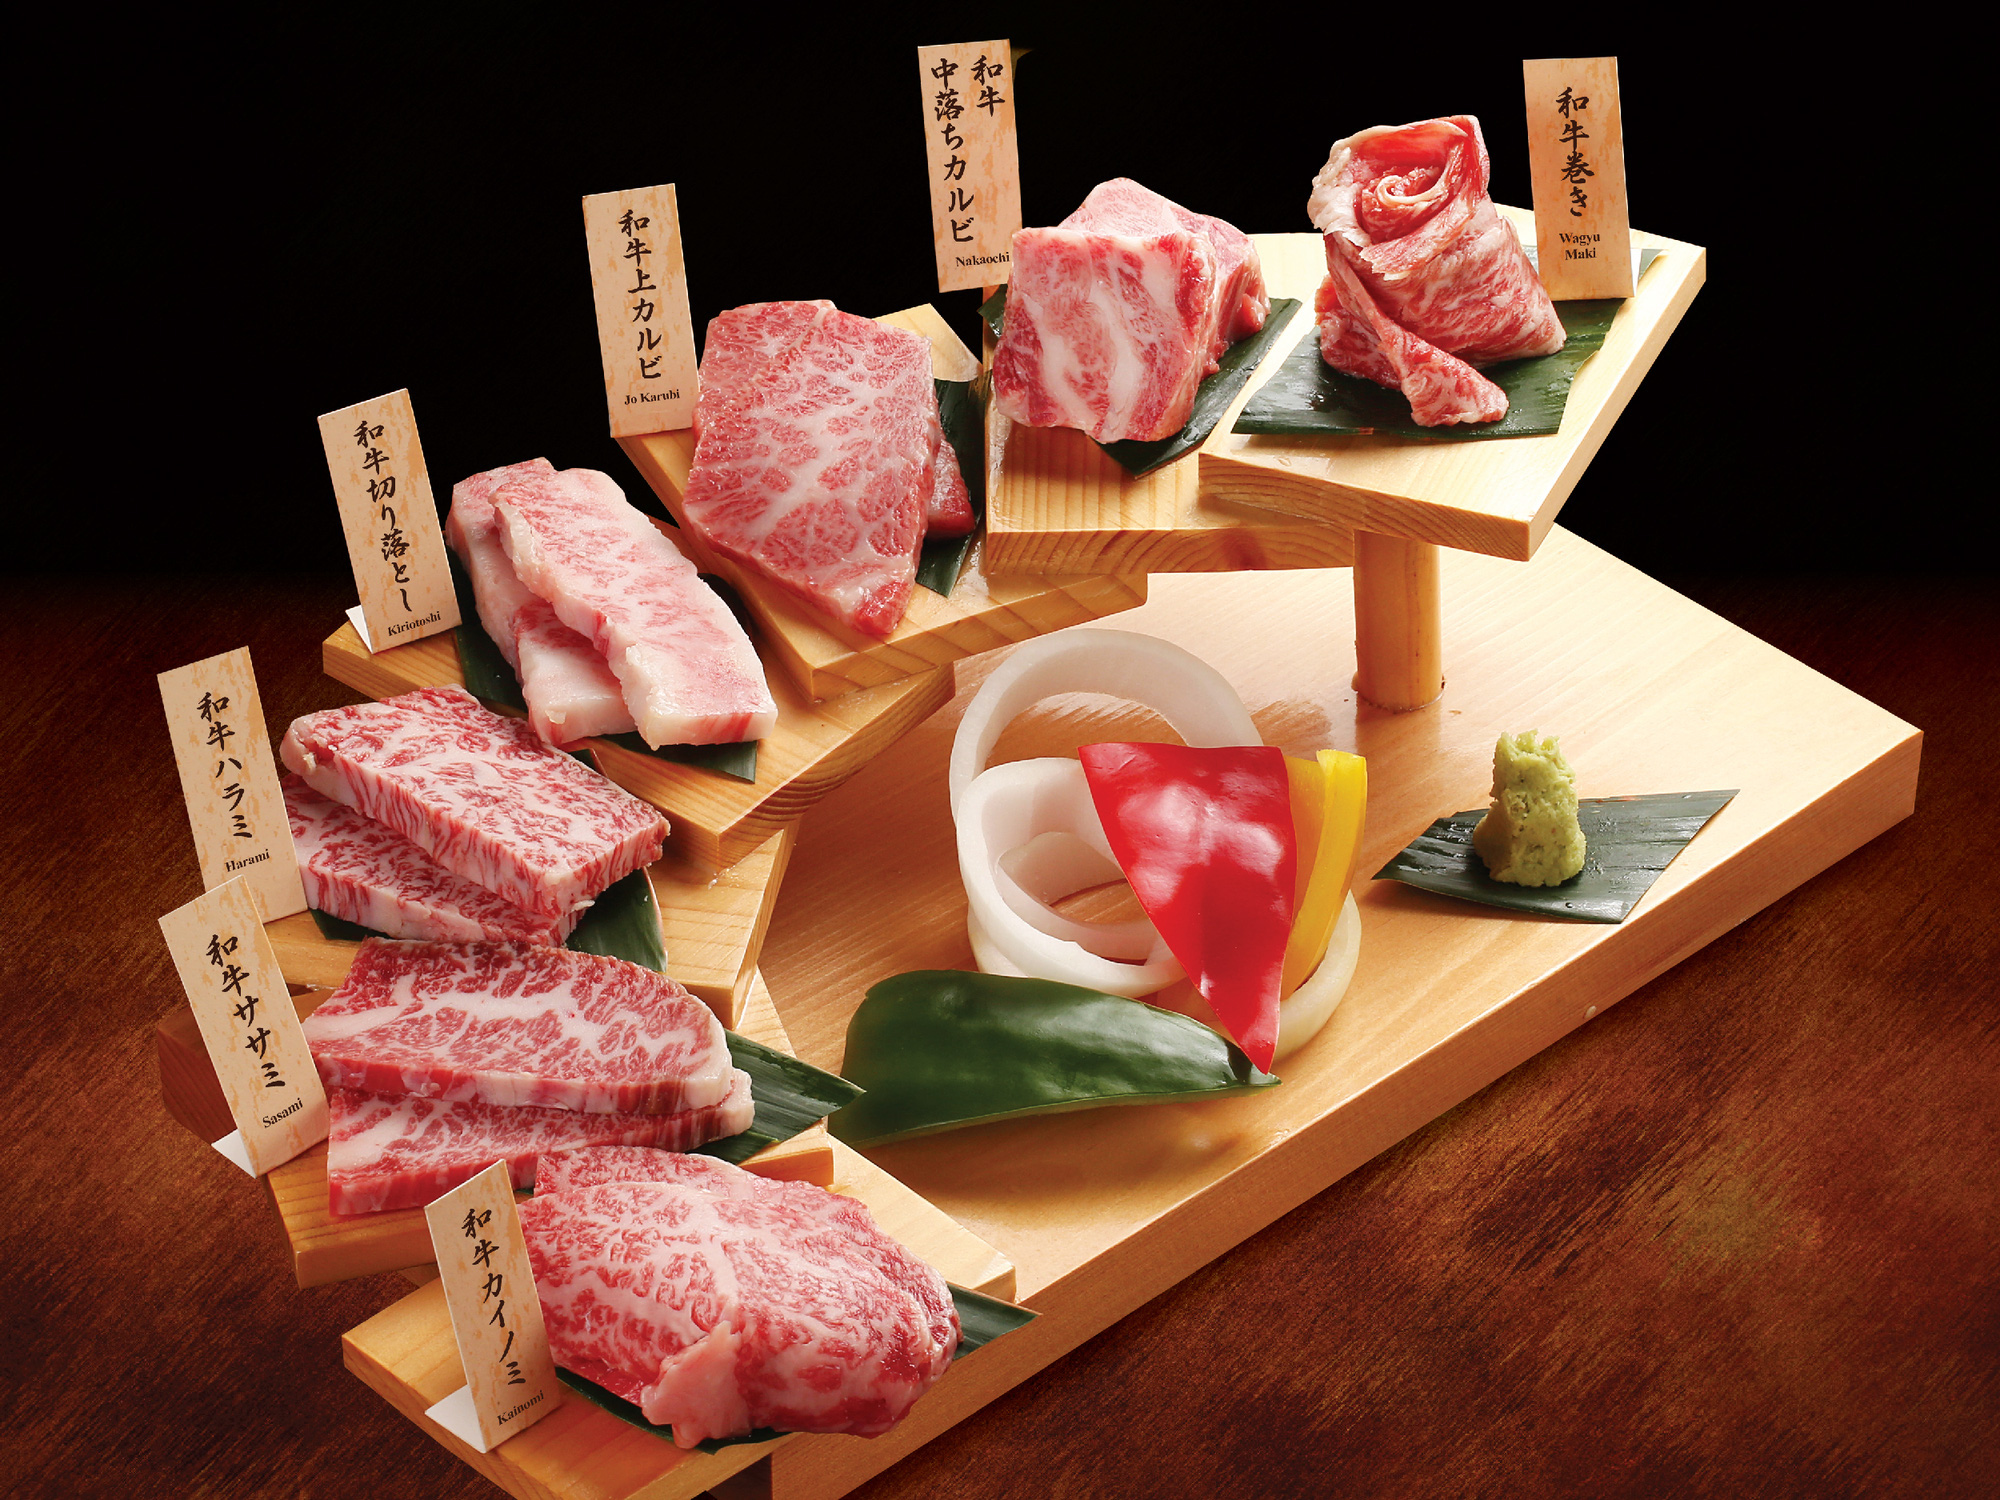 Siêu phẩm thịt đỏ đến từ Nhật Bản - Bò Wagyu Sendai - Ảnh 1.